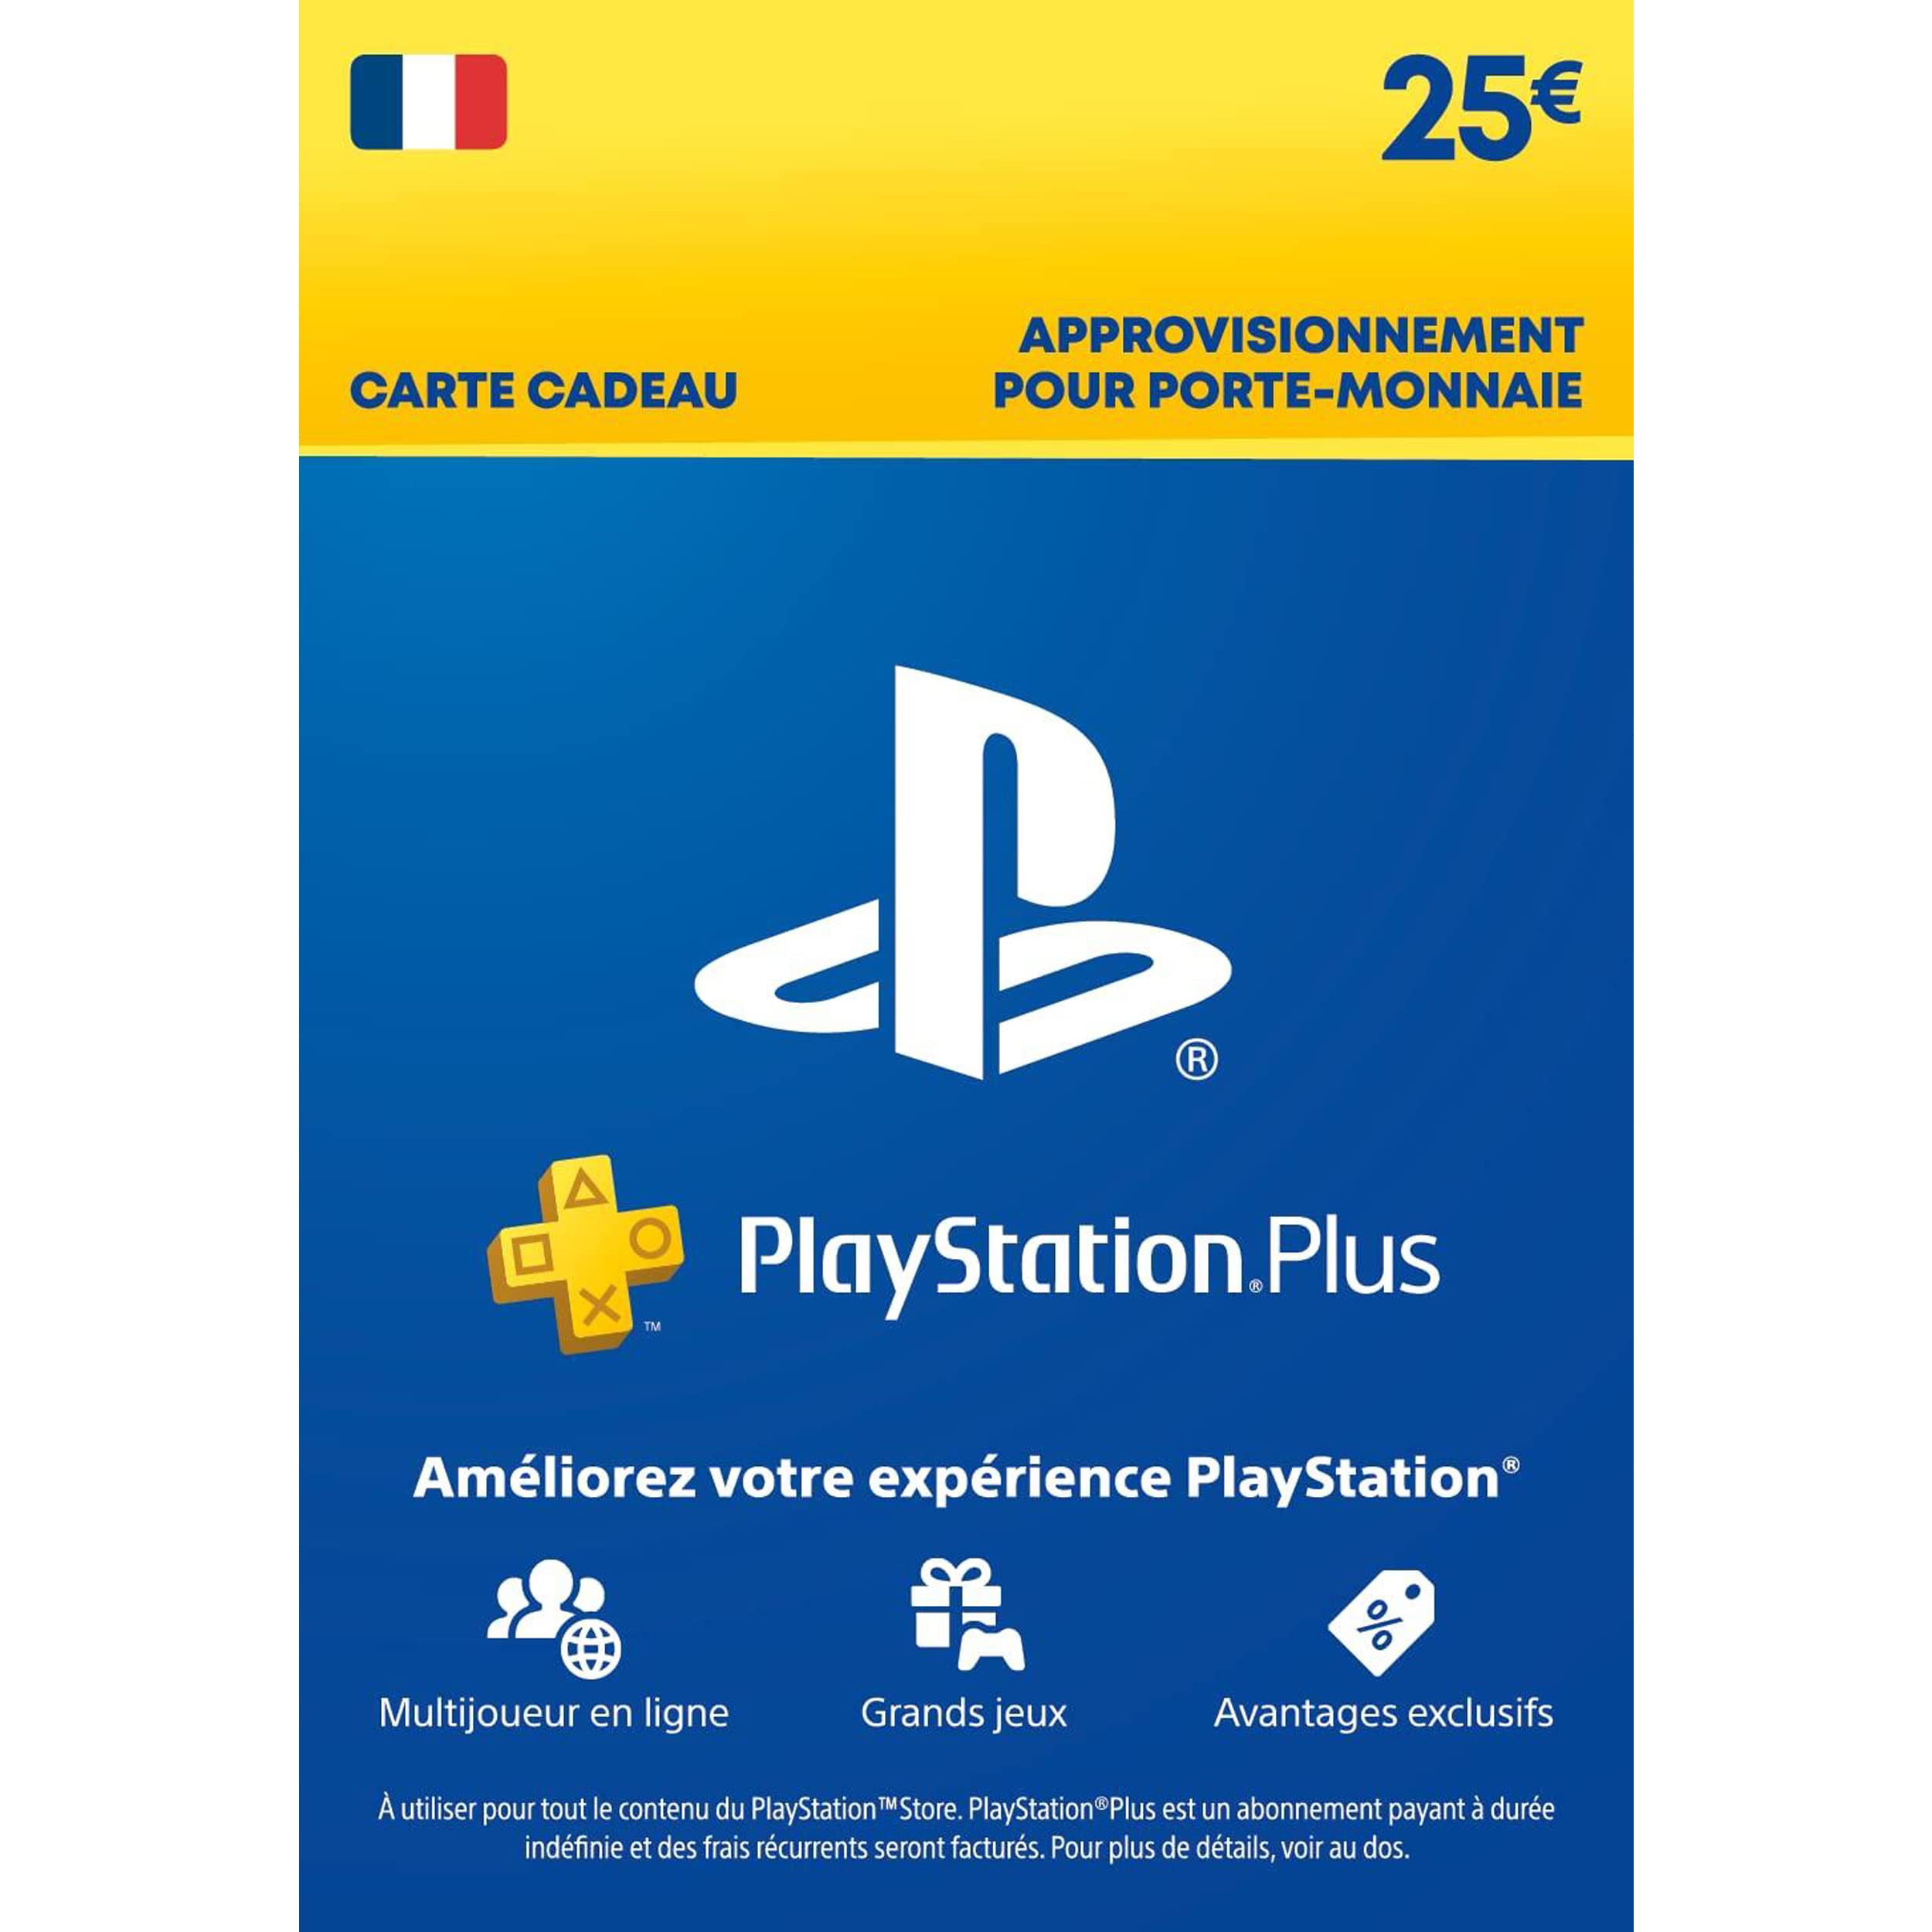 Abonnement Playstation Plus au Maroc